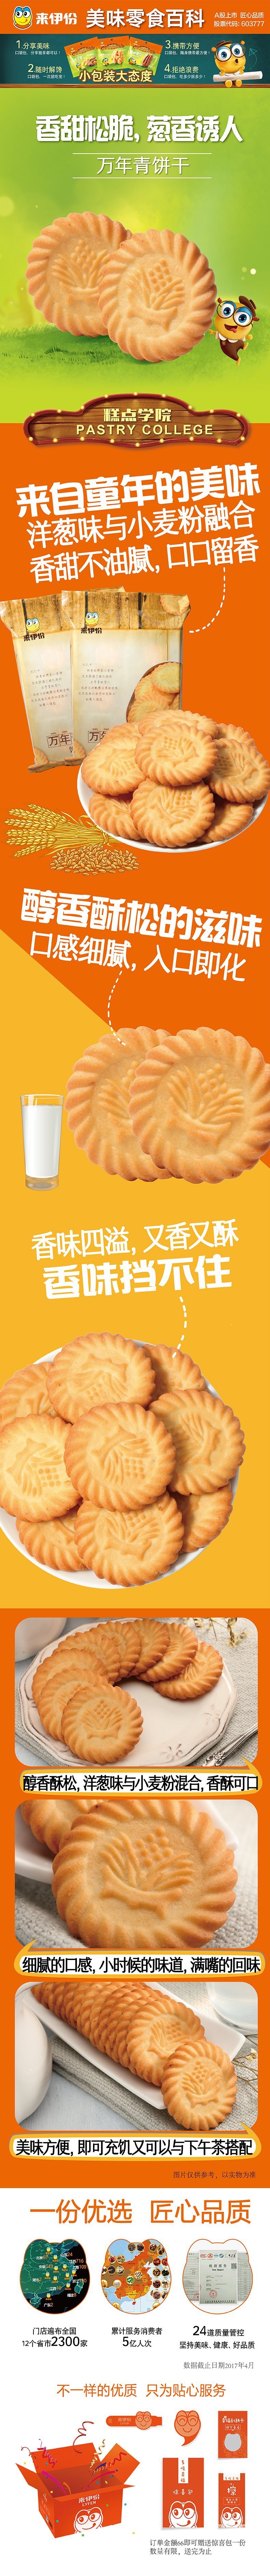 【中国直邮】来伊份 万年青早餐饼干 传统美味 230g